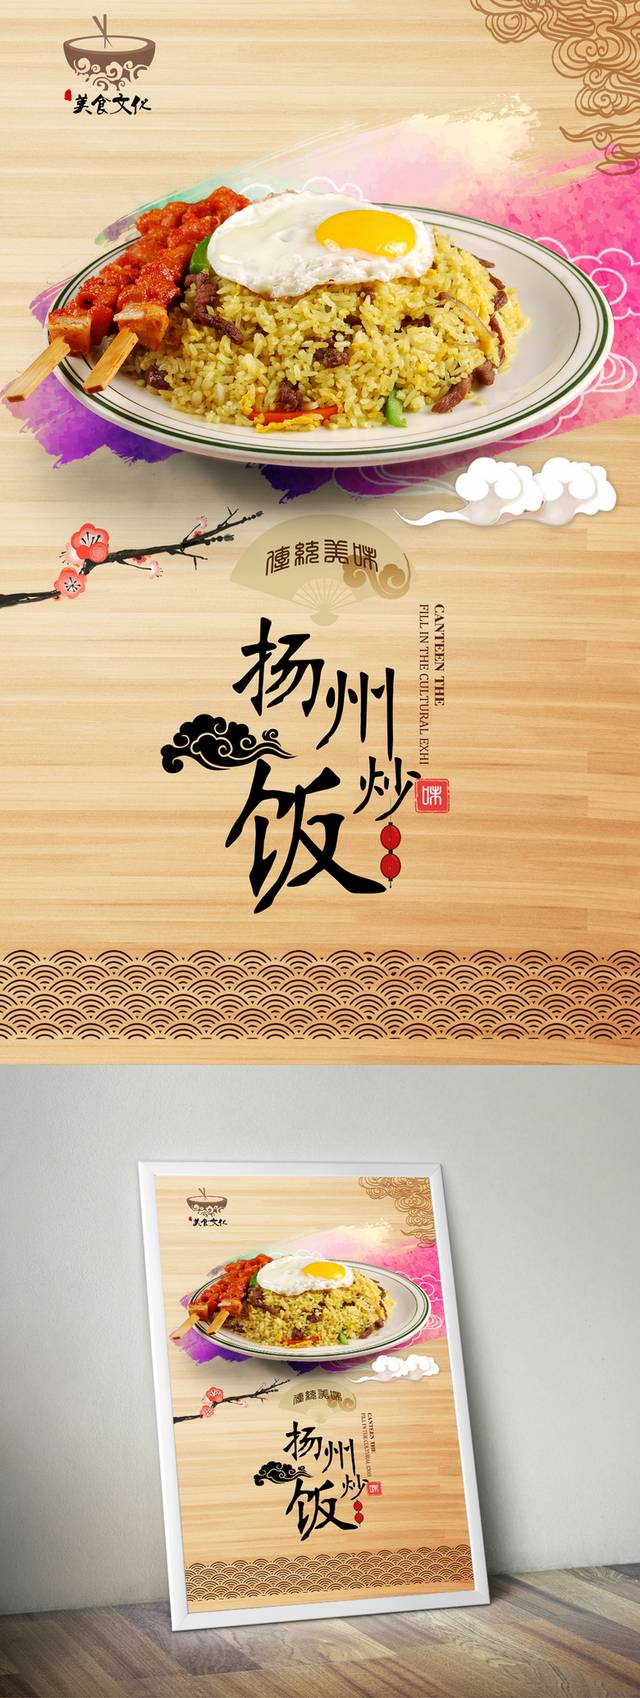 扬州炒饭宣传海报设计